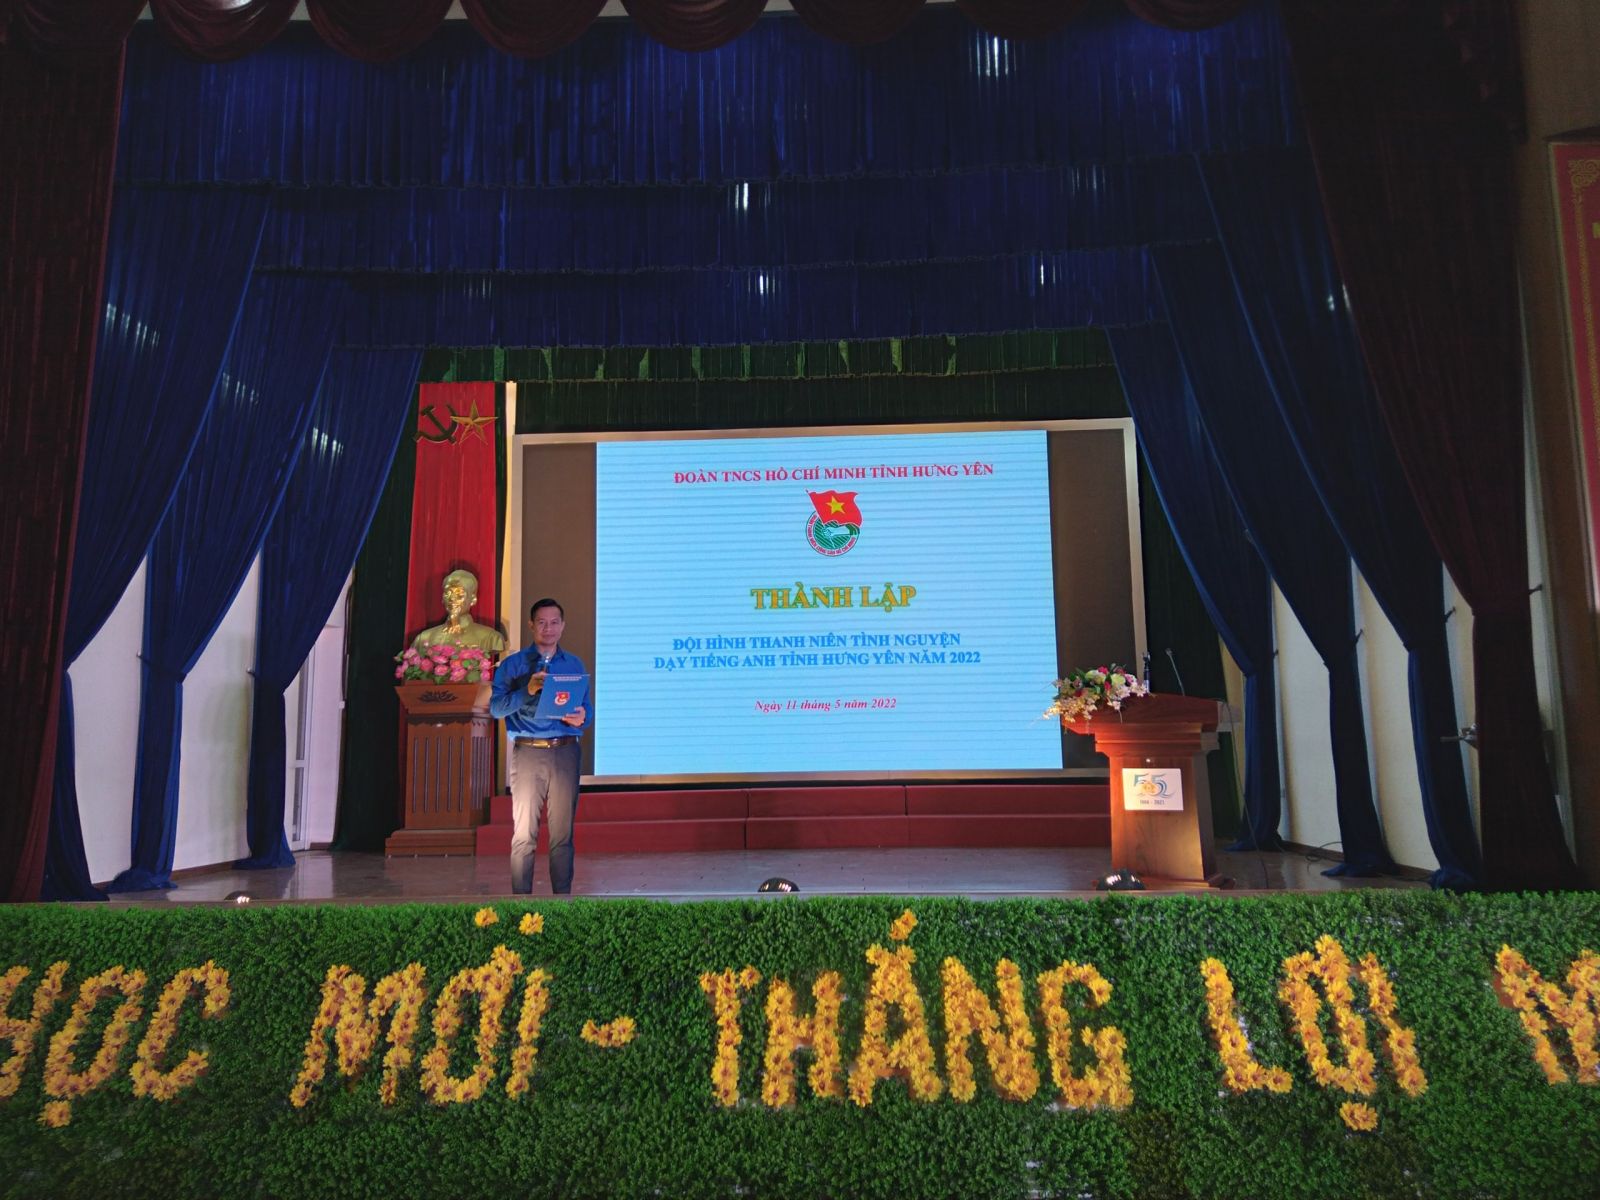 Ra mắt “Đội hình thanh niên tình nguyện dạy tiếng Anh  tỉnh Hưng Yên năm 2022”